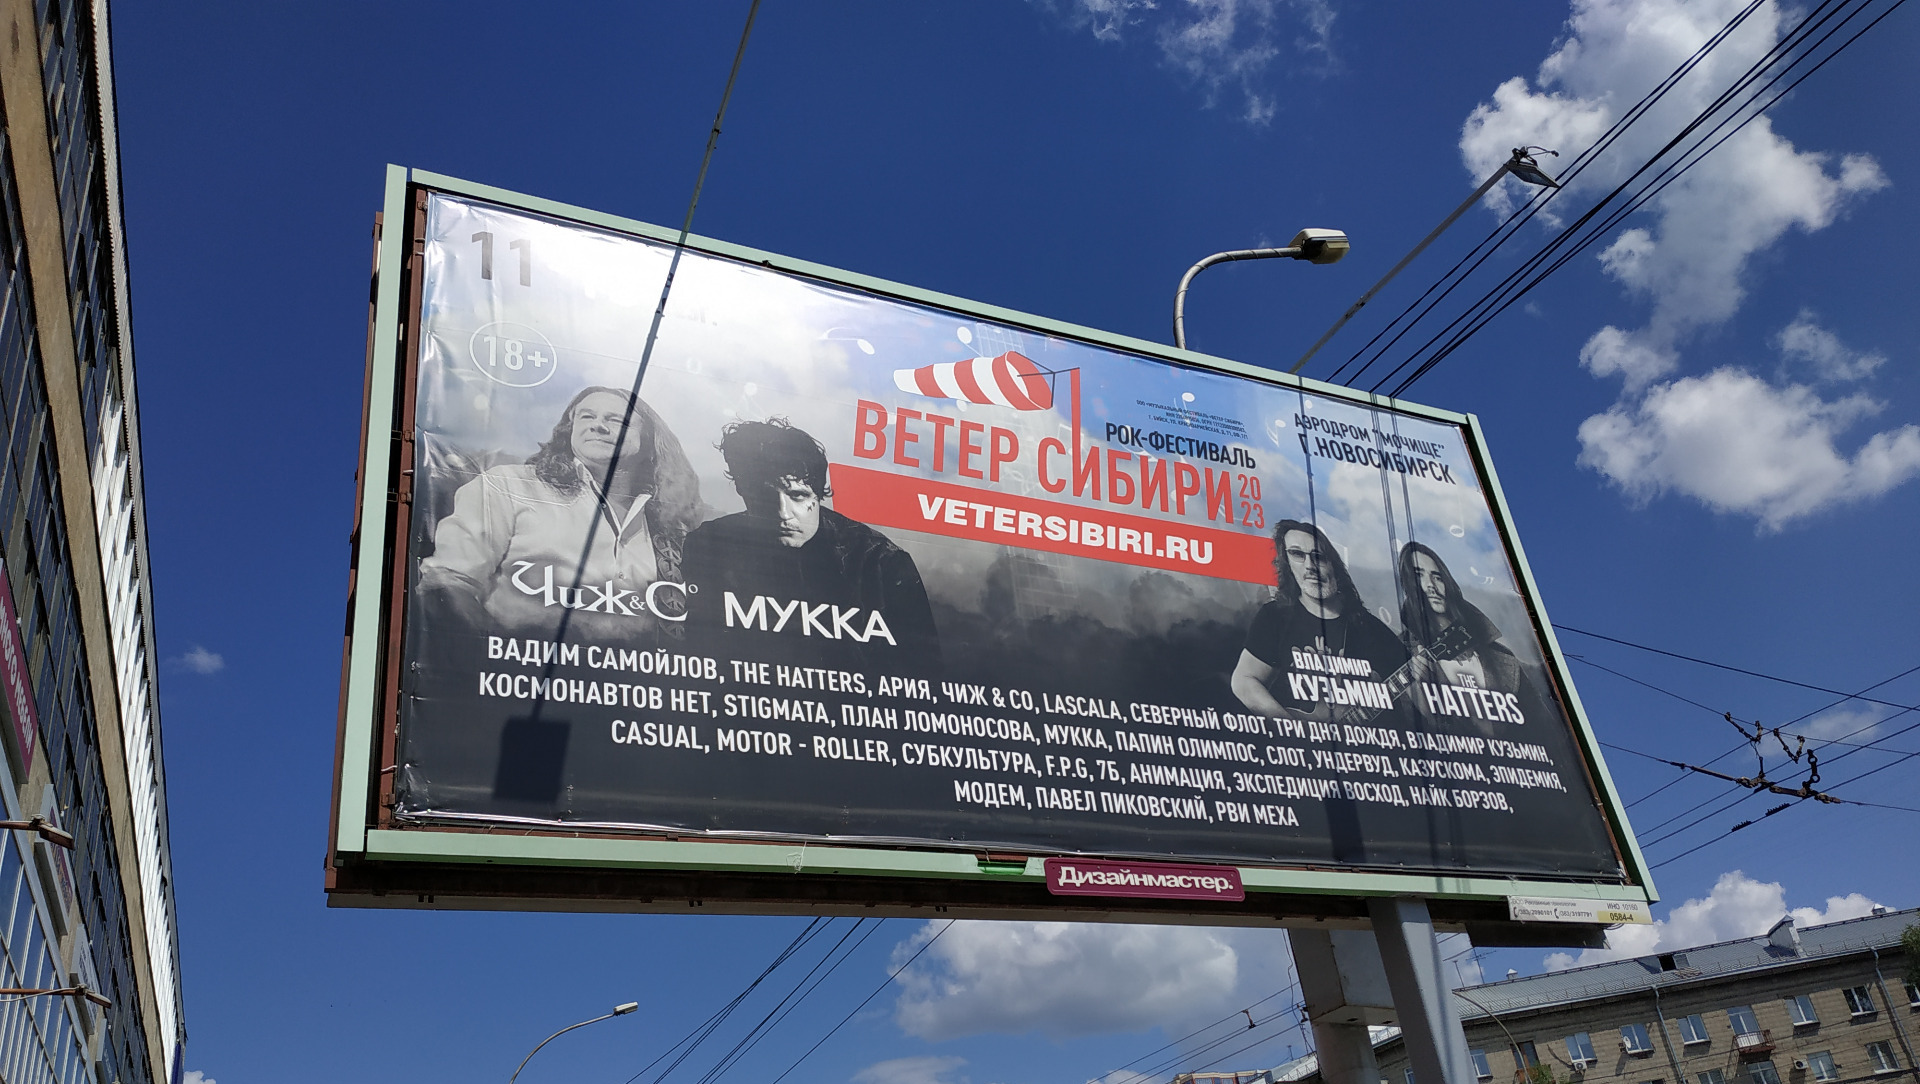 Это уже третий вариант афиши фестиваля "Ветер Сибири" в Новосибирске, на прежних афишах были другие музыканты